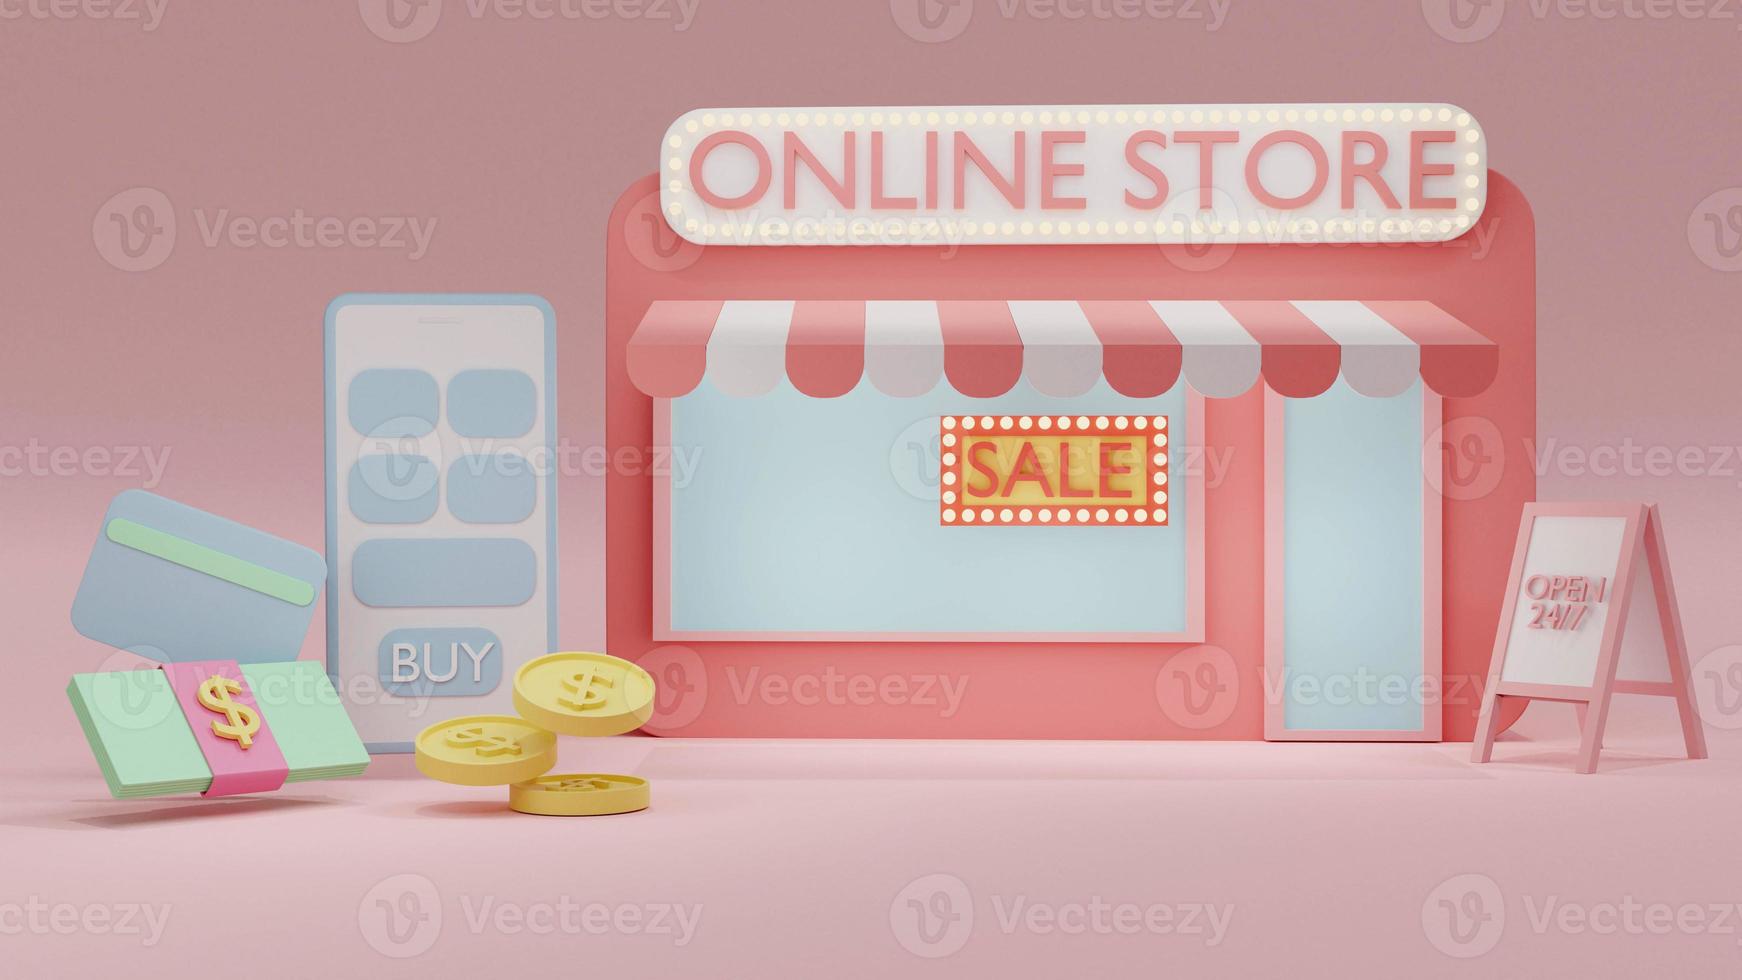 3D-Rendering-Konzept des Online-Shoppings. Vorderansicht des Online-Shops mit Verkaufsschild, Smartphone, Dollarschein, Kreditkarte, Münzen im Hintergrund. 3D-Rendering. 3D-Darstellung. foto